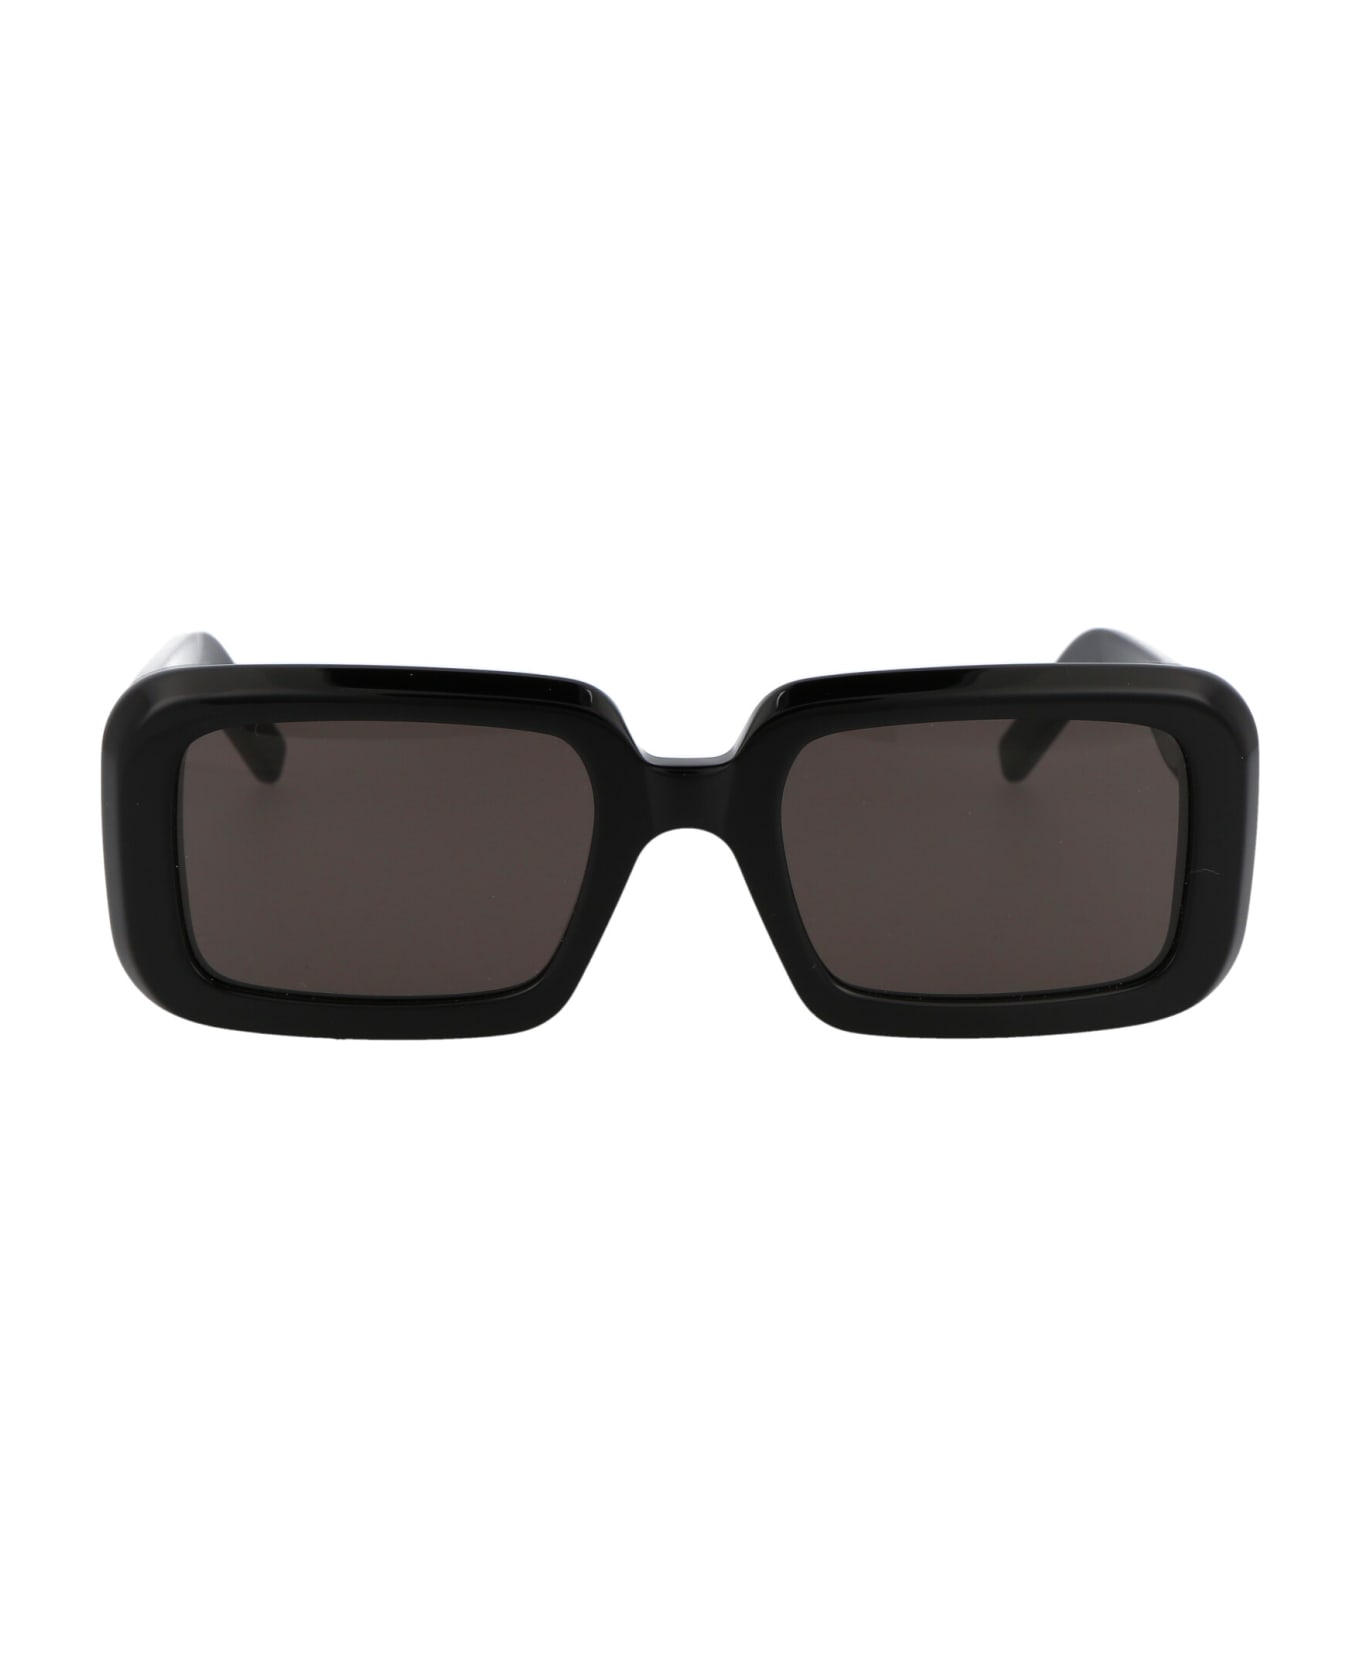 Saint Laurent Eyewear Sl 534 Sunrise Sunglasses - 001 BLACK BLACK BLACK